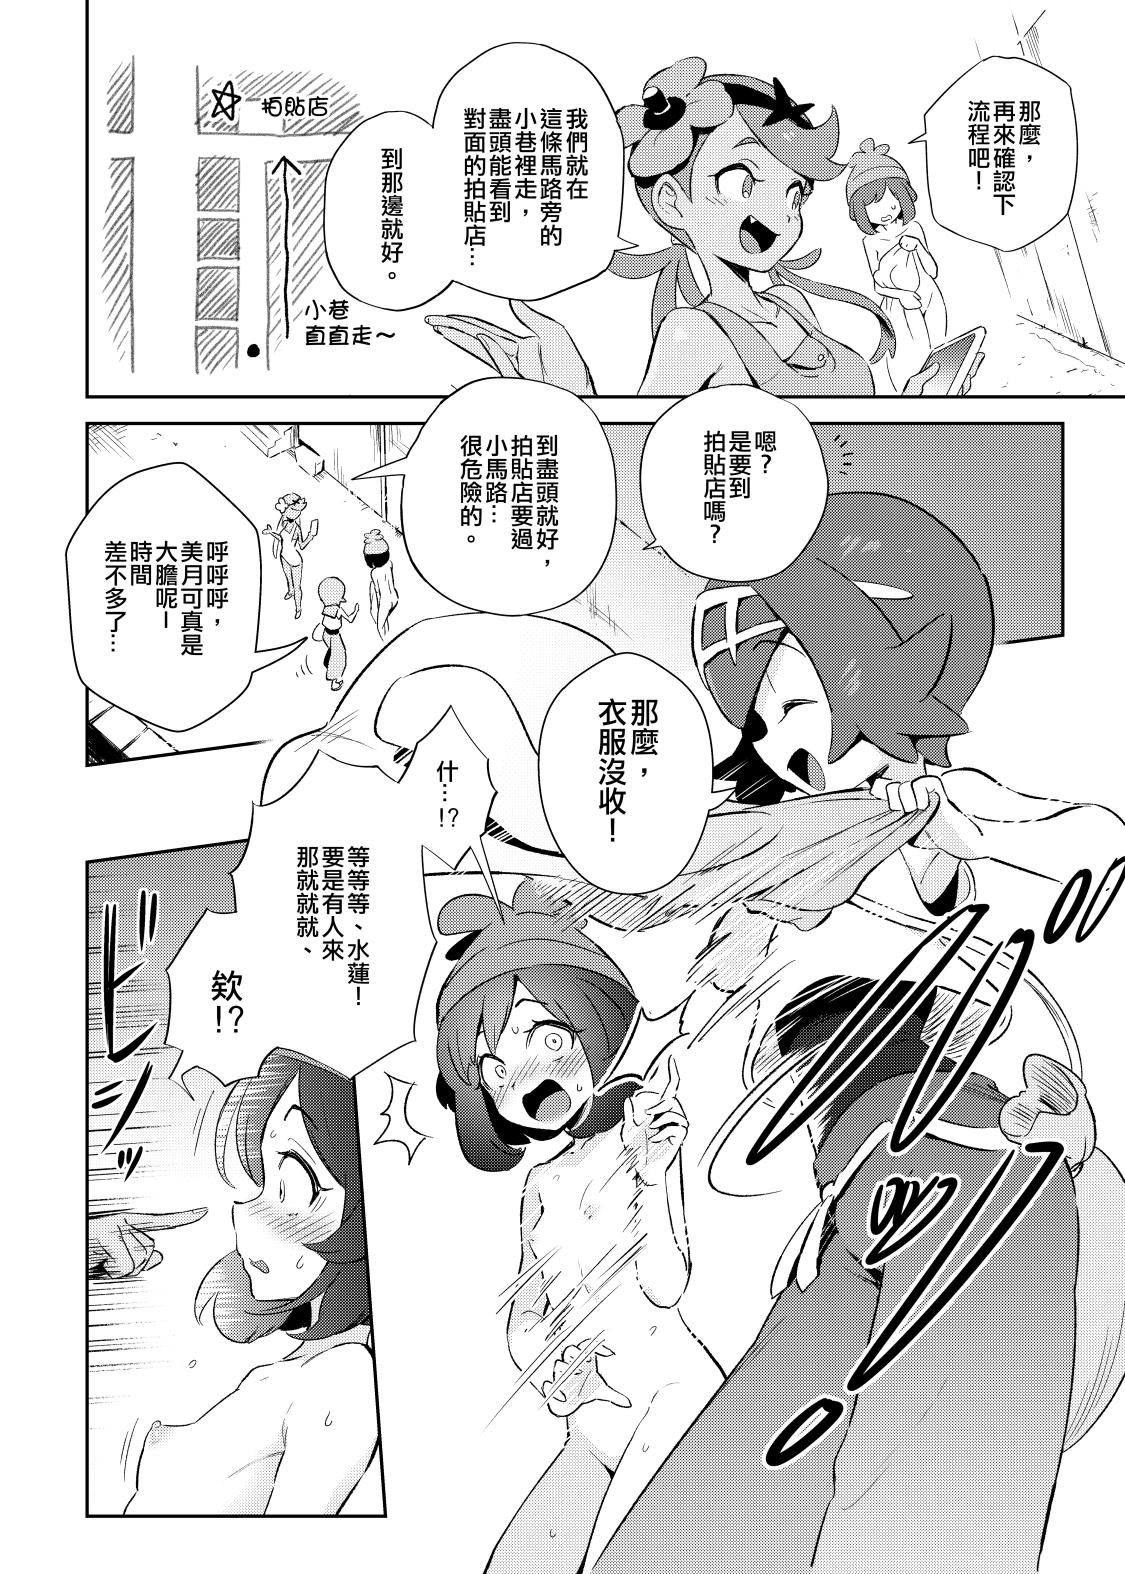 Gordibuena Onnanoko-tachi no Himitsu no Bouken | 女孩們的秘密冒險 - Pokemon | pocket monsters Abuse - Page 7